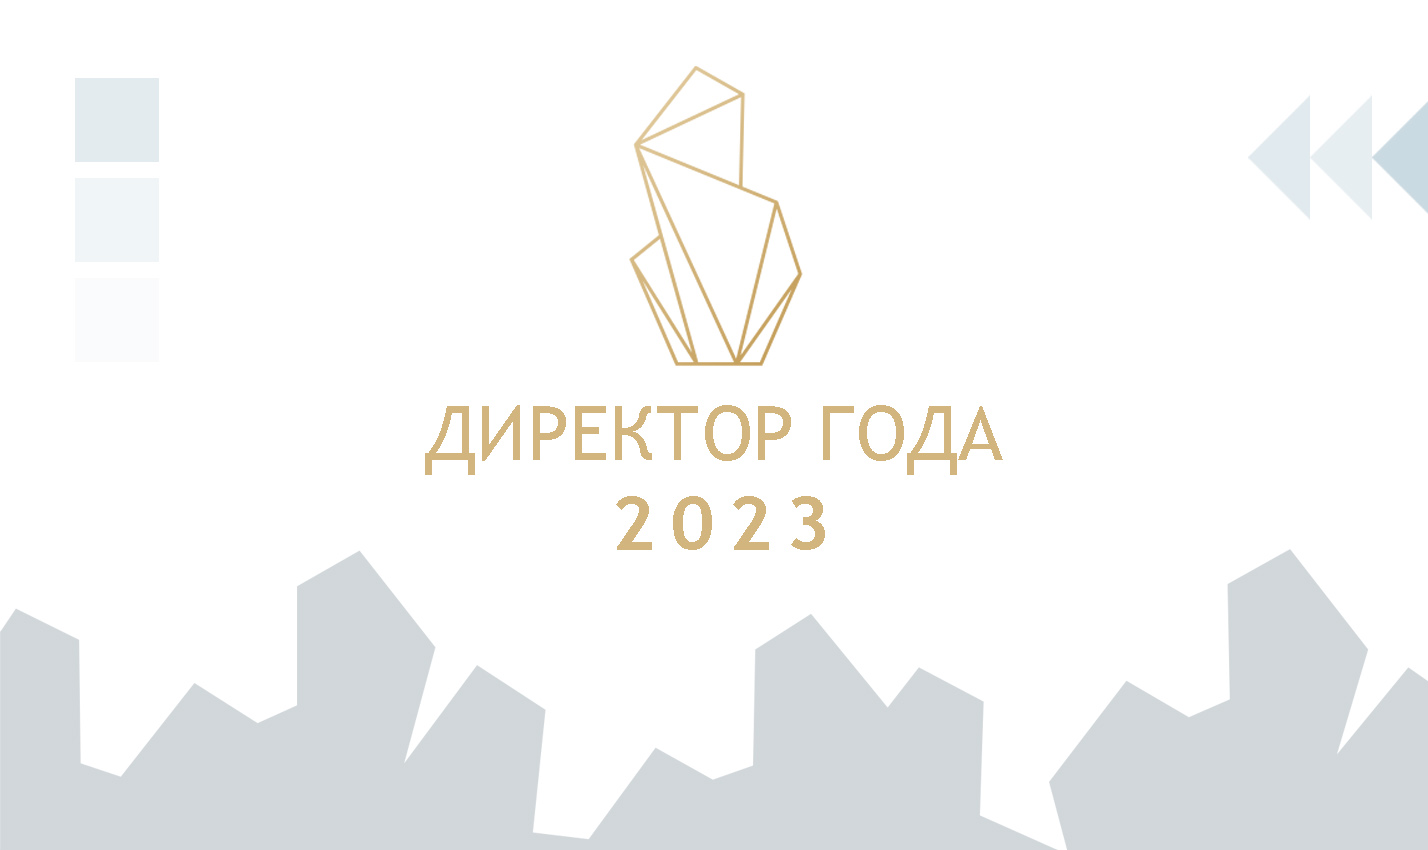 Участники Всероссийского профессионального конкурса «Директор года России» — 2023